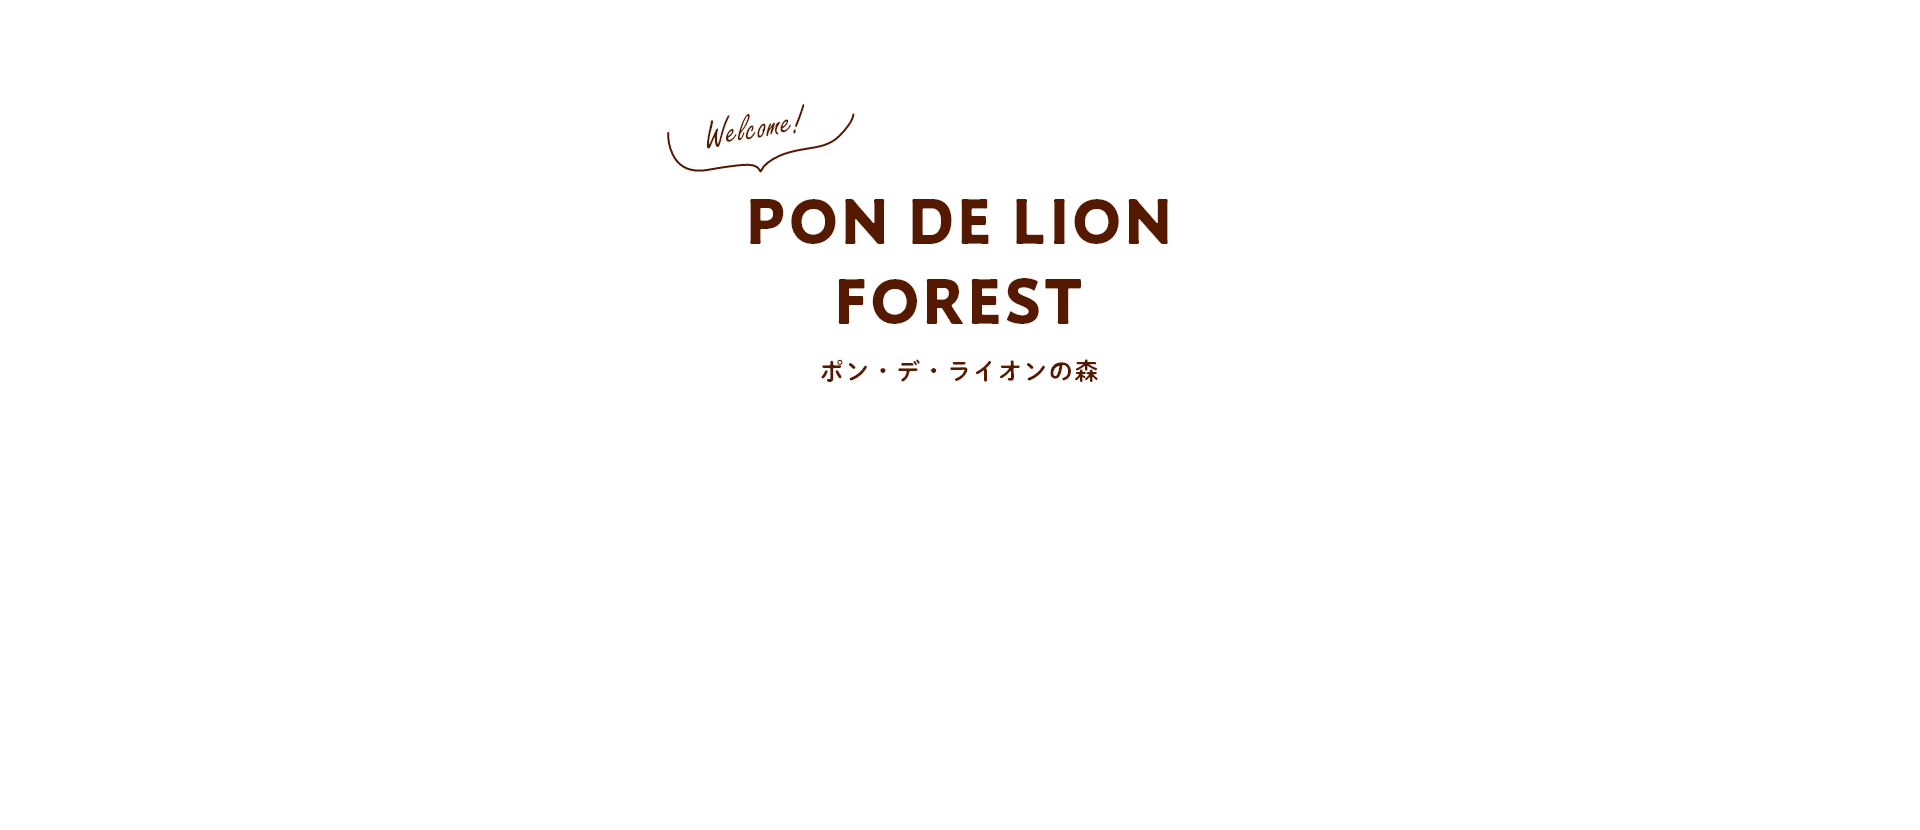 PON DE LION FOREST ポン・デ・ライオンの森